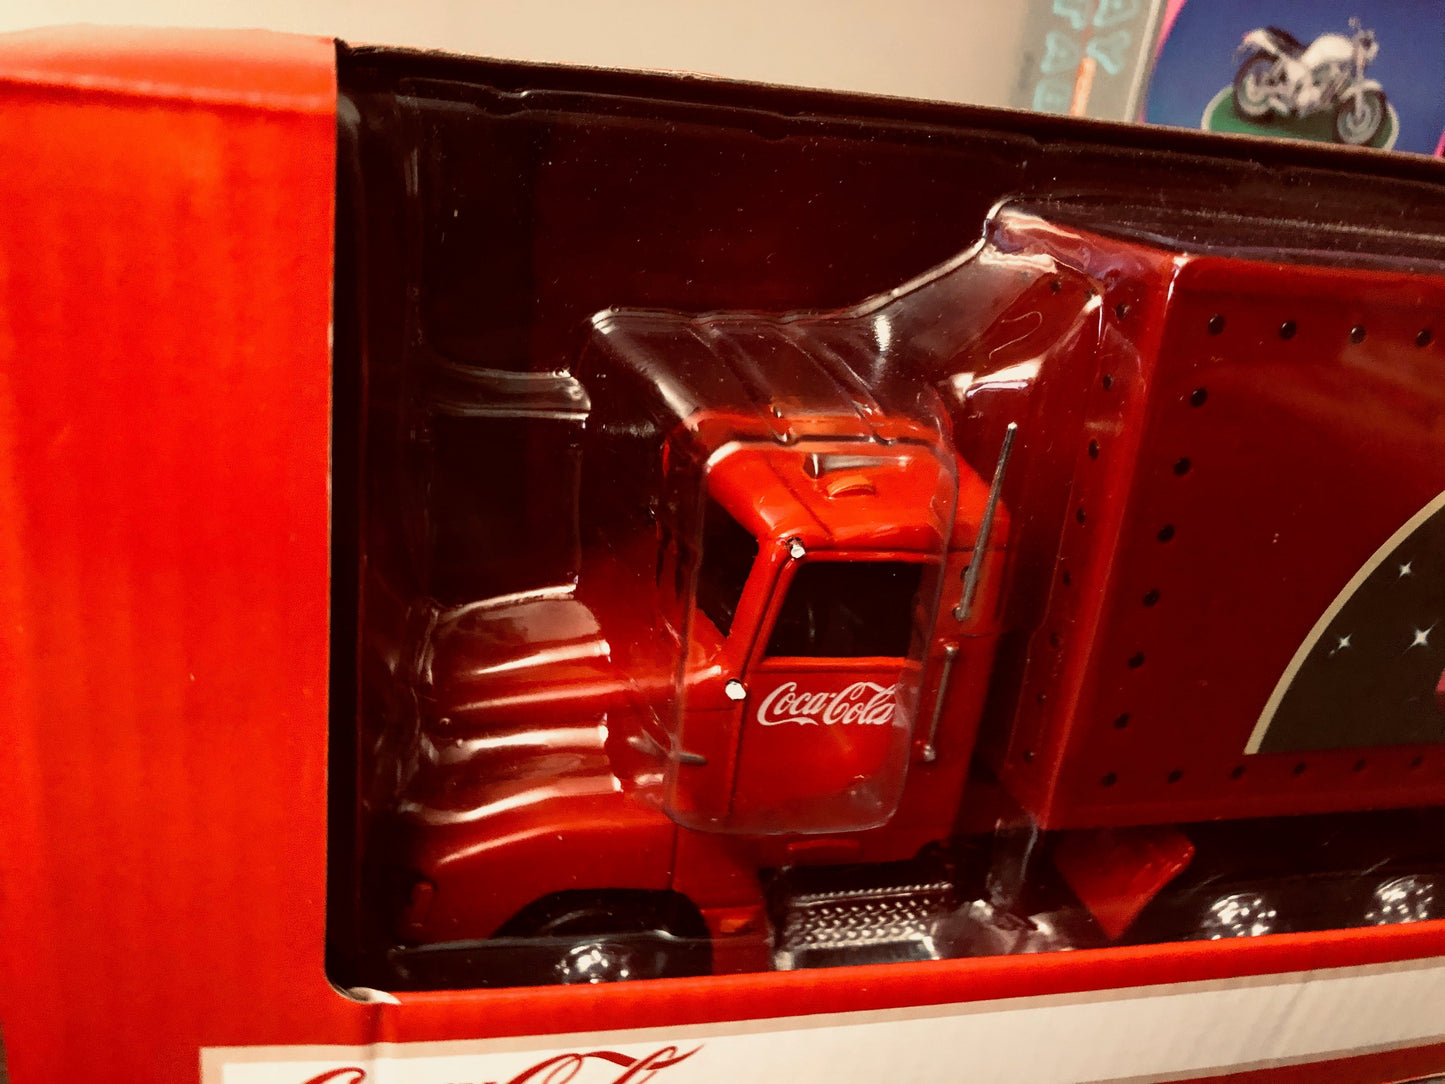  Motor City Coca-Cola - Holiday Caravan Tractor Trailer. (DISC)